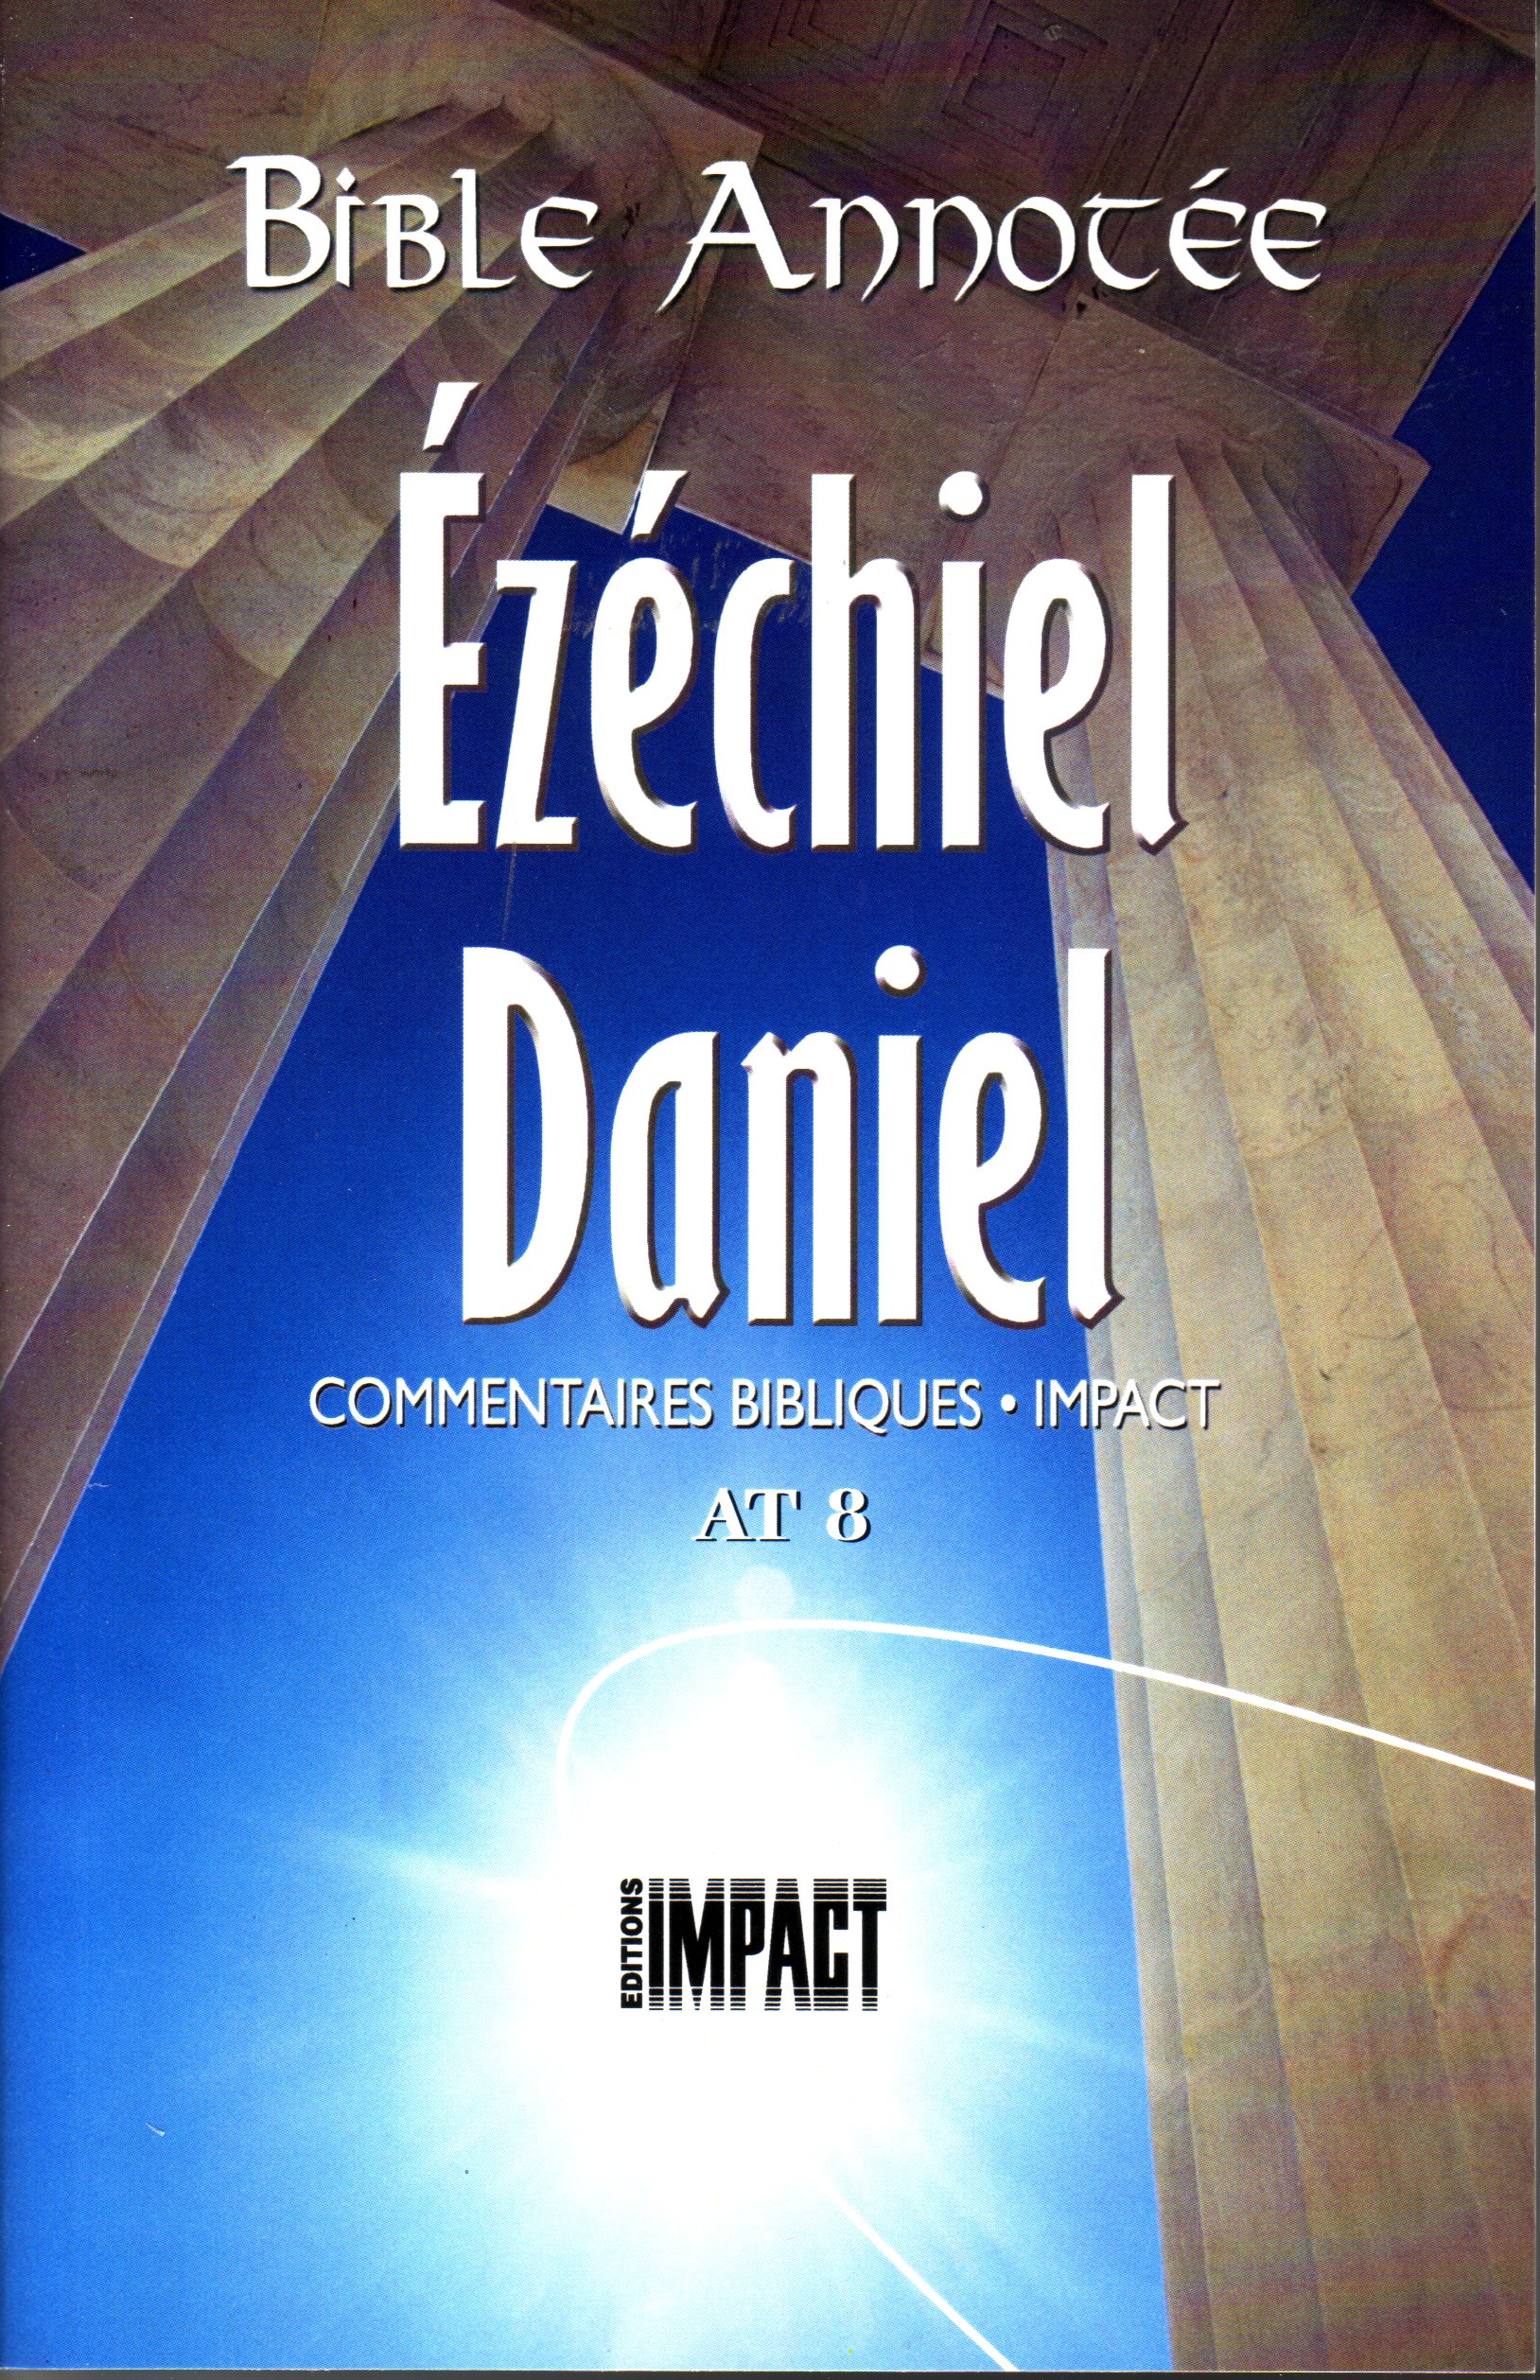 Bible Annotée - Ezéchiel Daniel (La) - Commentaires bibliques Impact AT 8